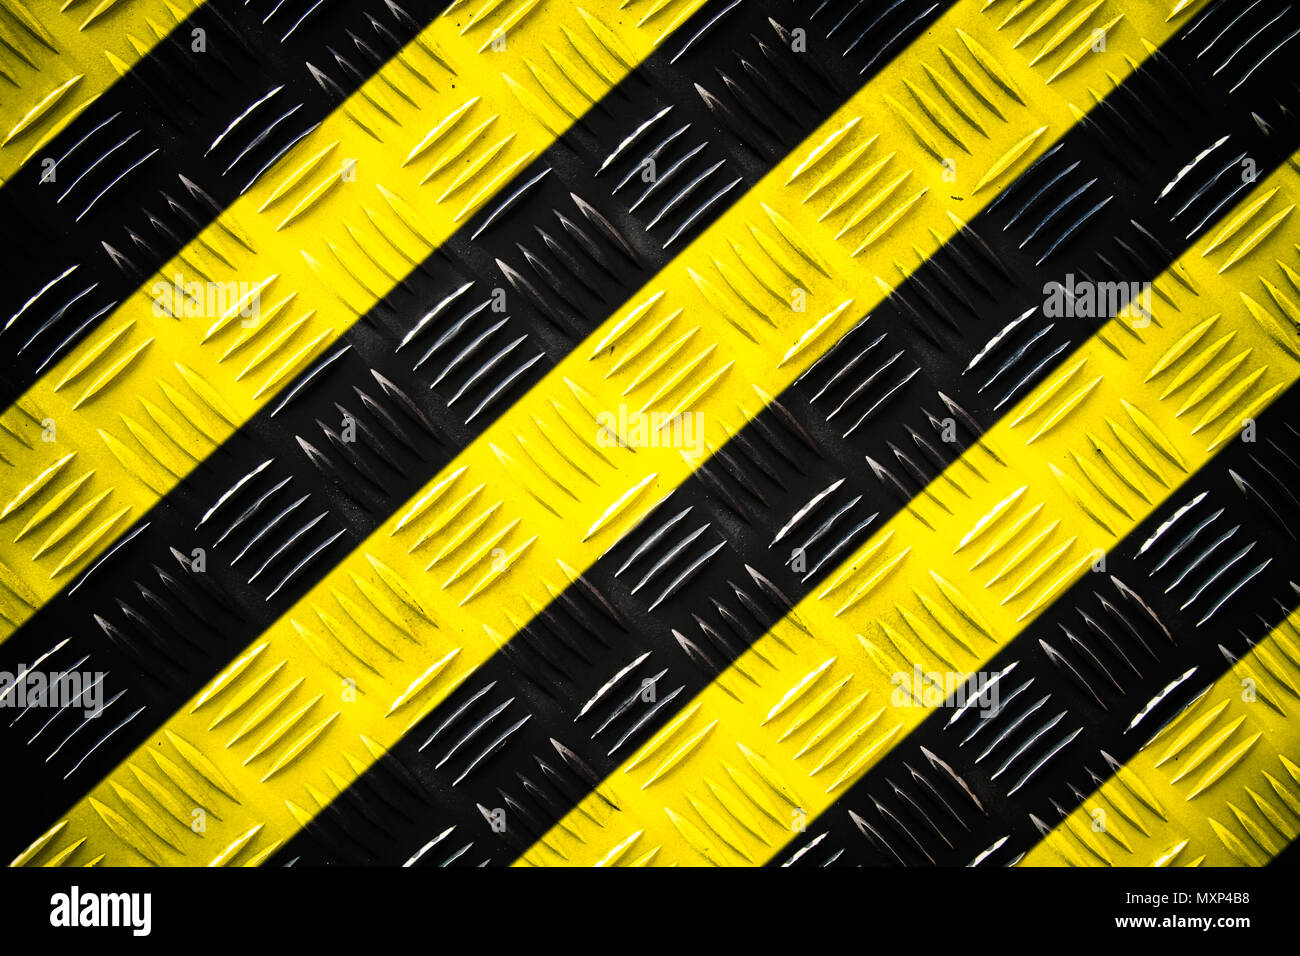 Warnschild gelben und schwarzen Streifen bemalte gegenüber Stahl Riffelblech (oder Diamond plate) auf dem Boden als Textur Hintergrund. Konzept für nicht eingeben Stockfoto